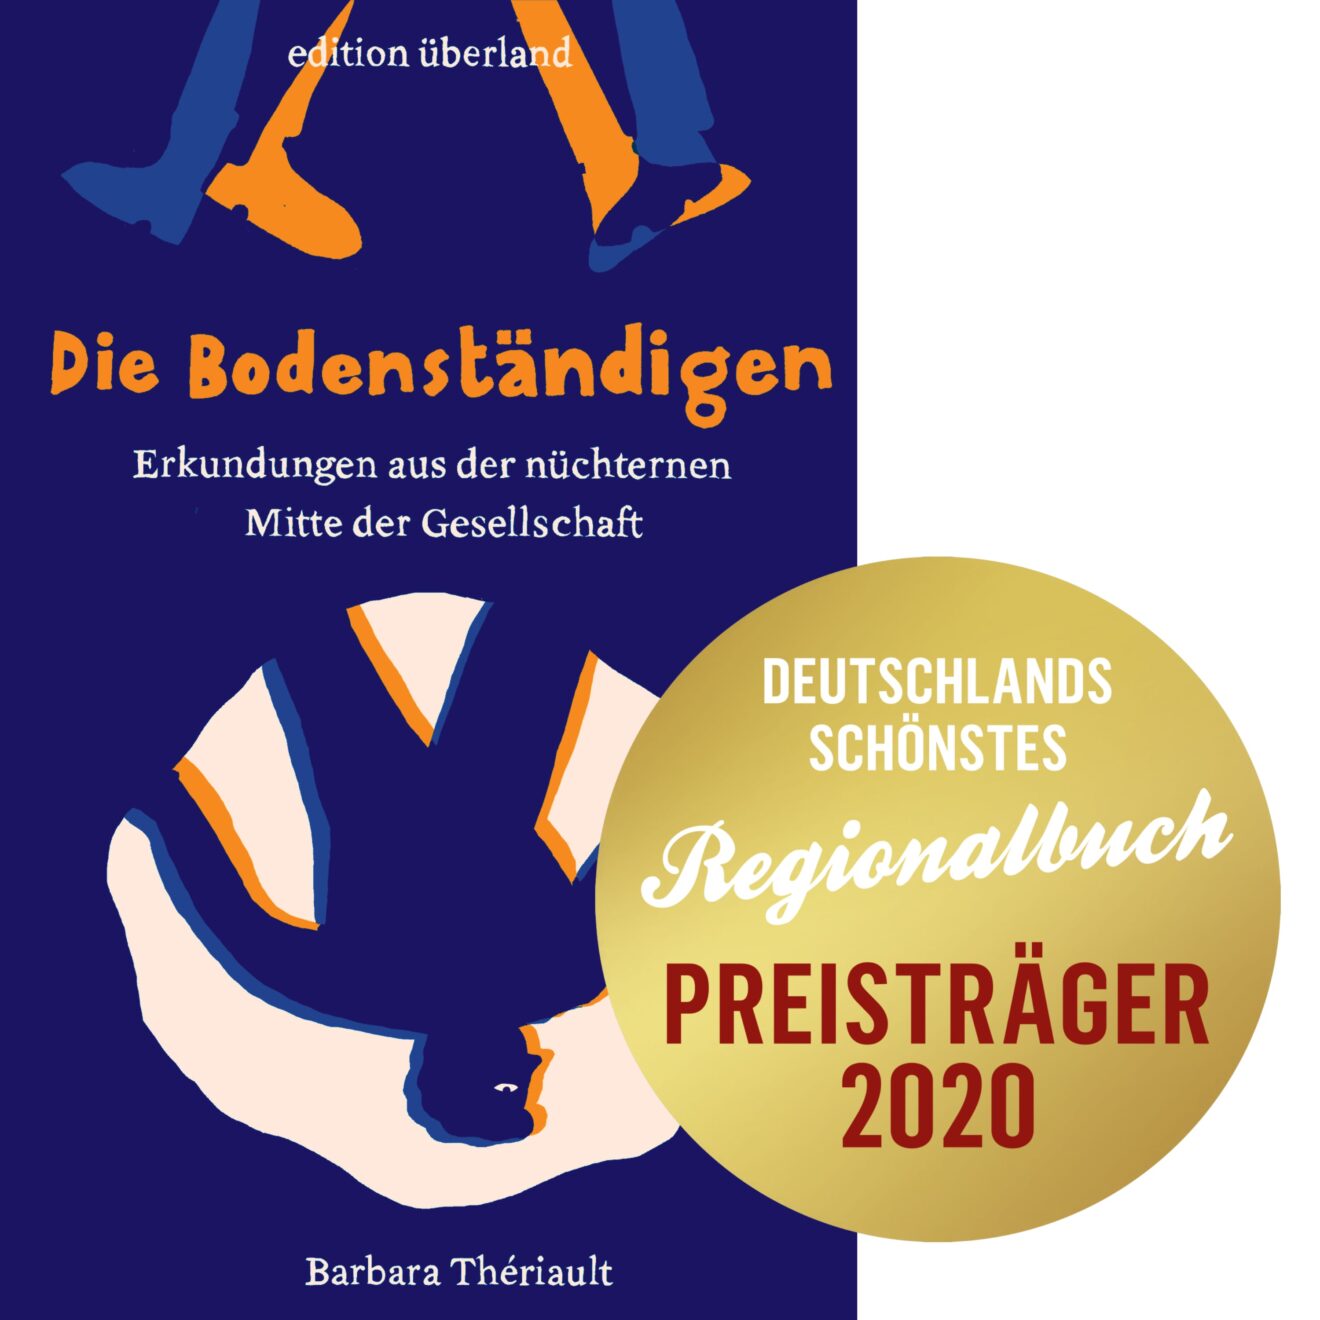 Barbara Thériault: Die Bodenständigen – ausgezeichnet als Deutschlands schönstes Regionalbuch 2020